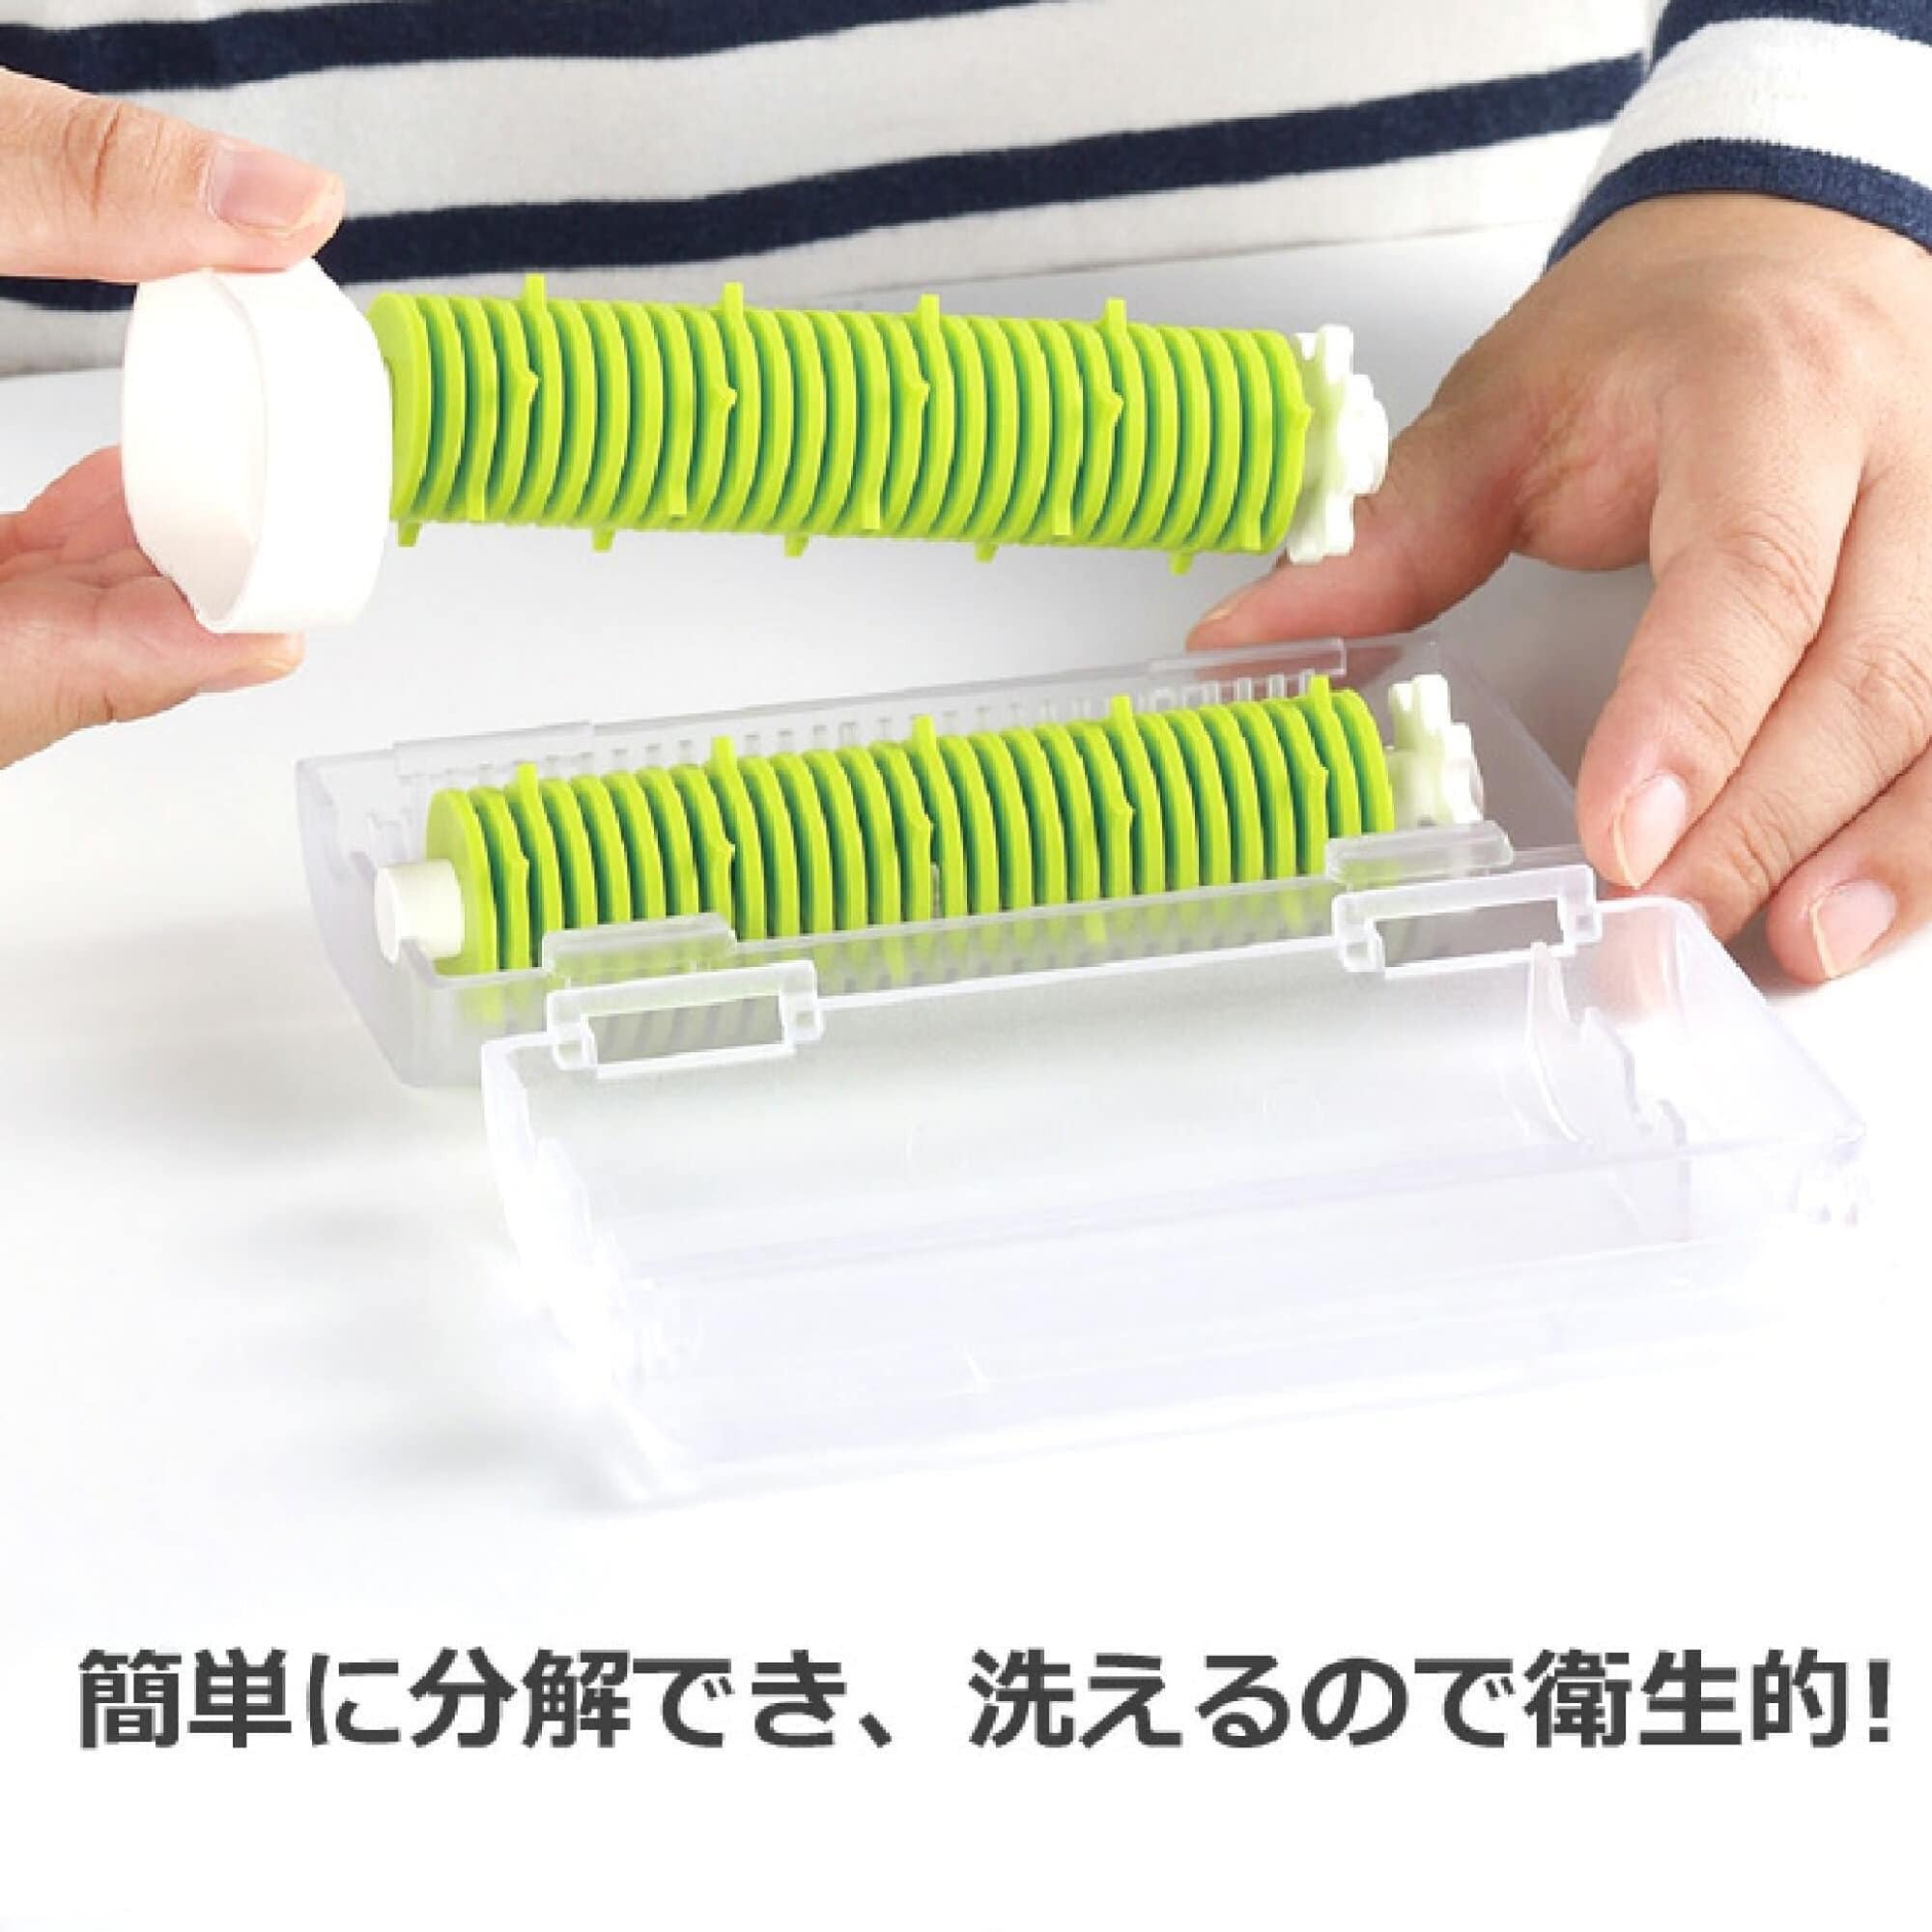 日本廚房用具【AKEBONO曙產業】餐具海苔切絲器 日本製 (5)